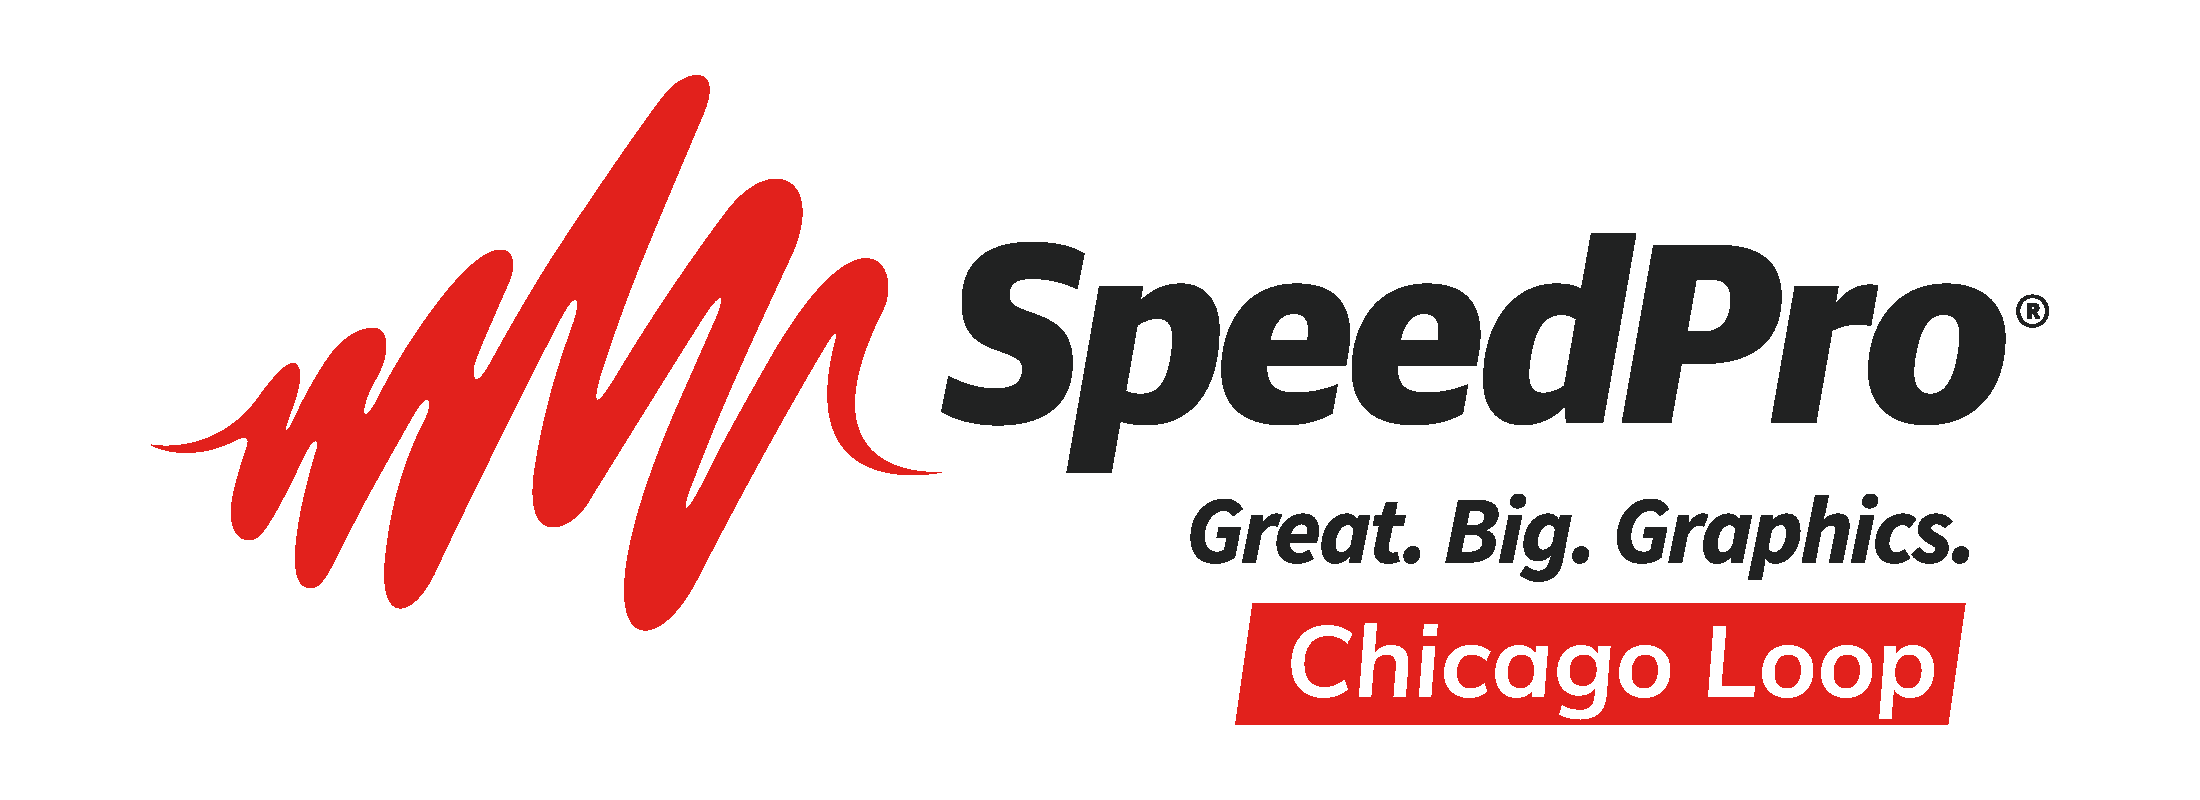 speedpro-logo